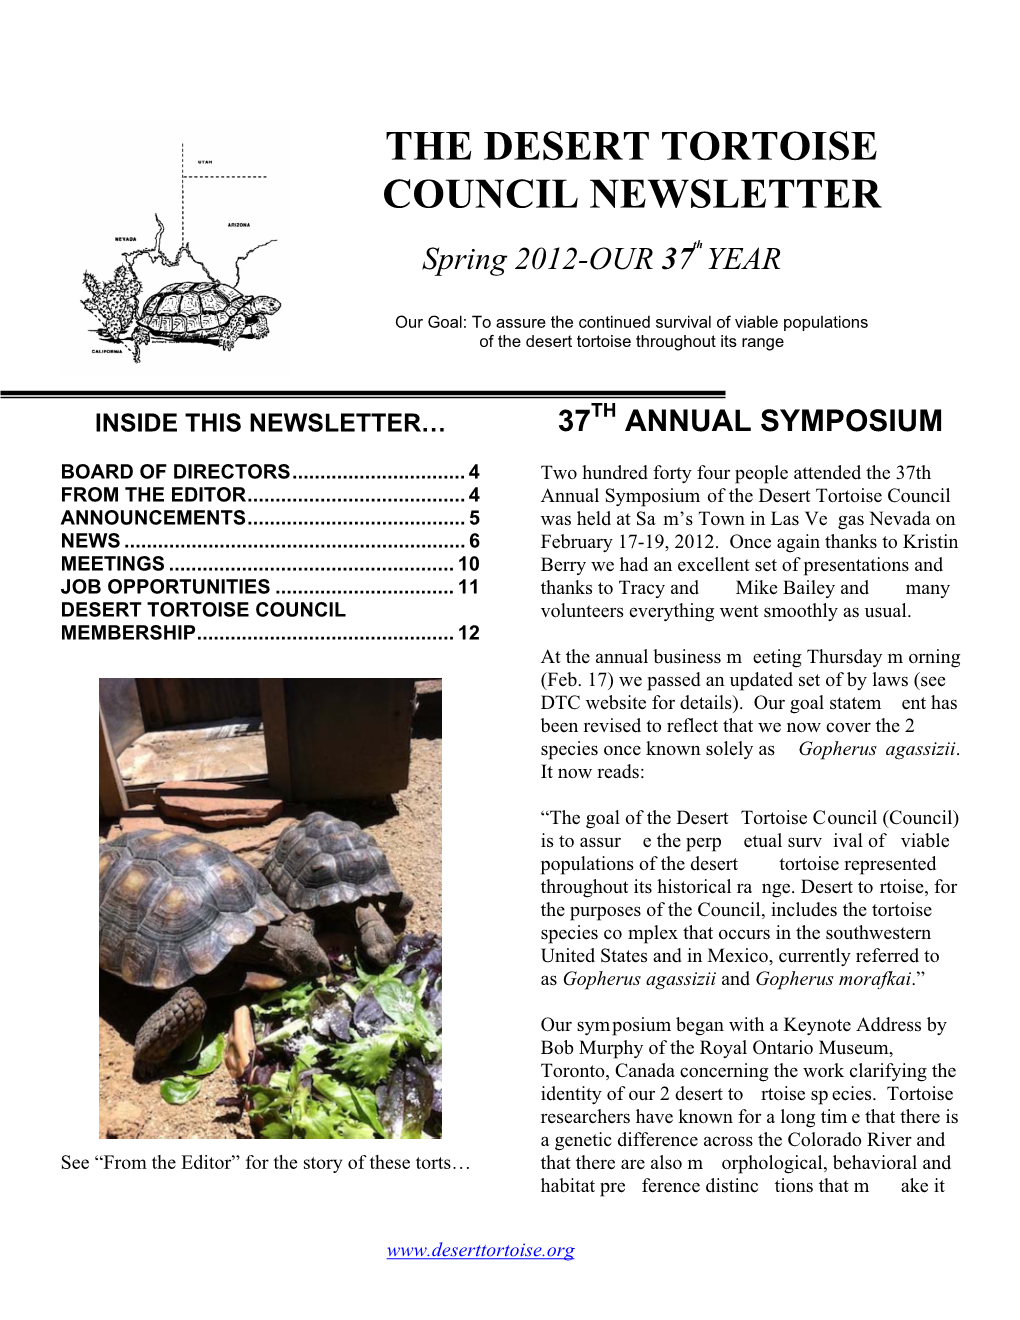 The Desert Tortoise Council Newsletter